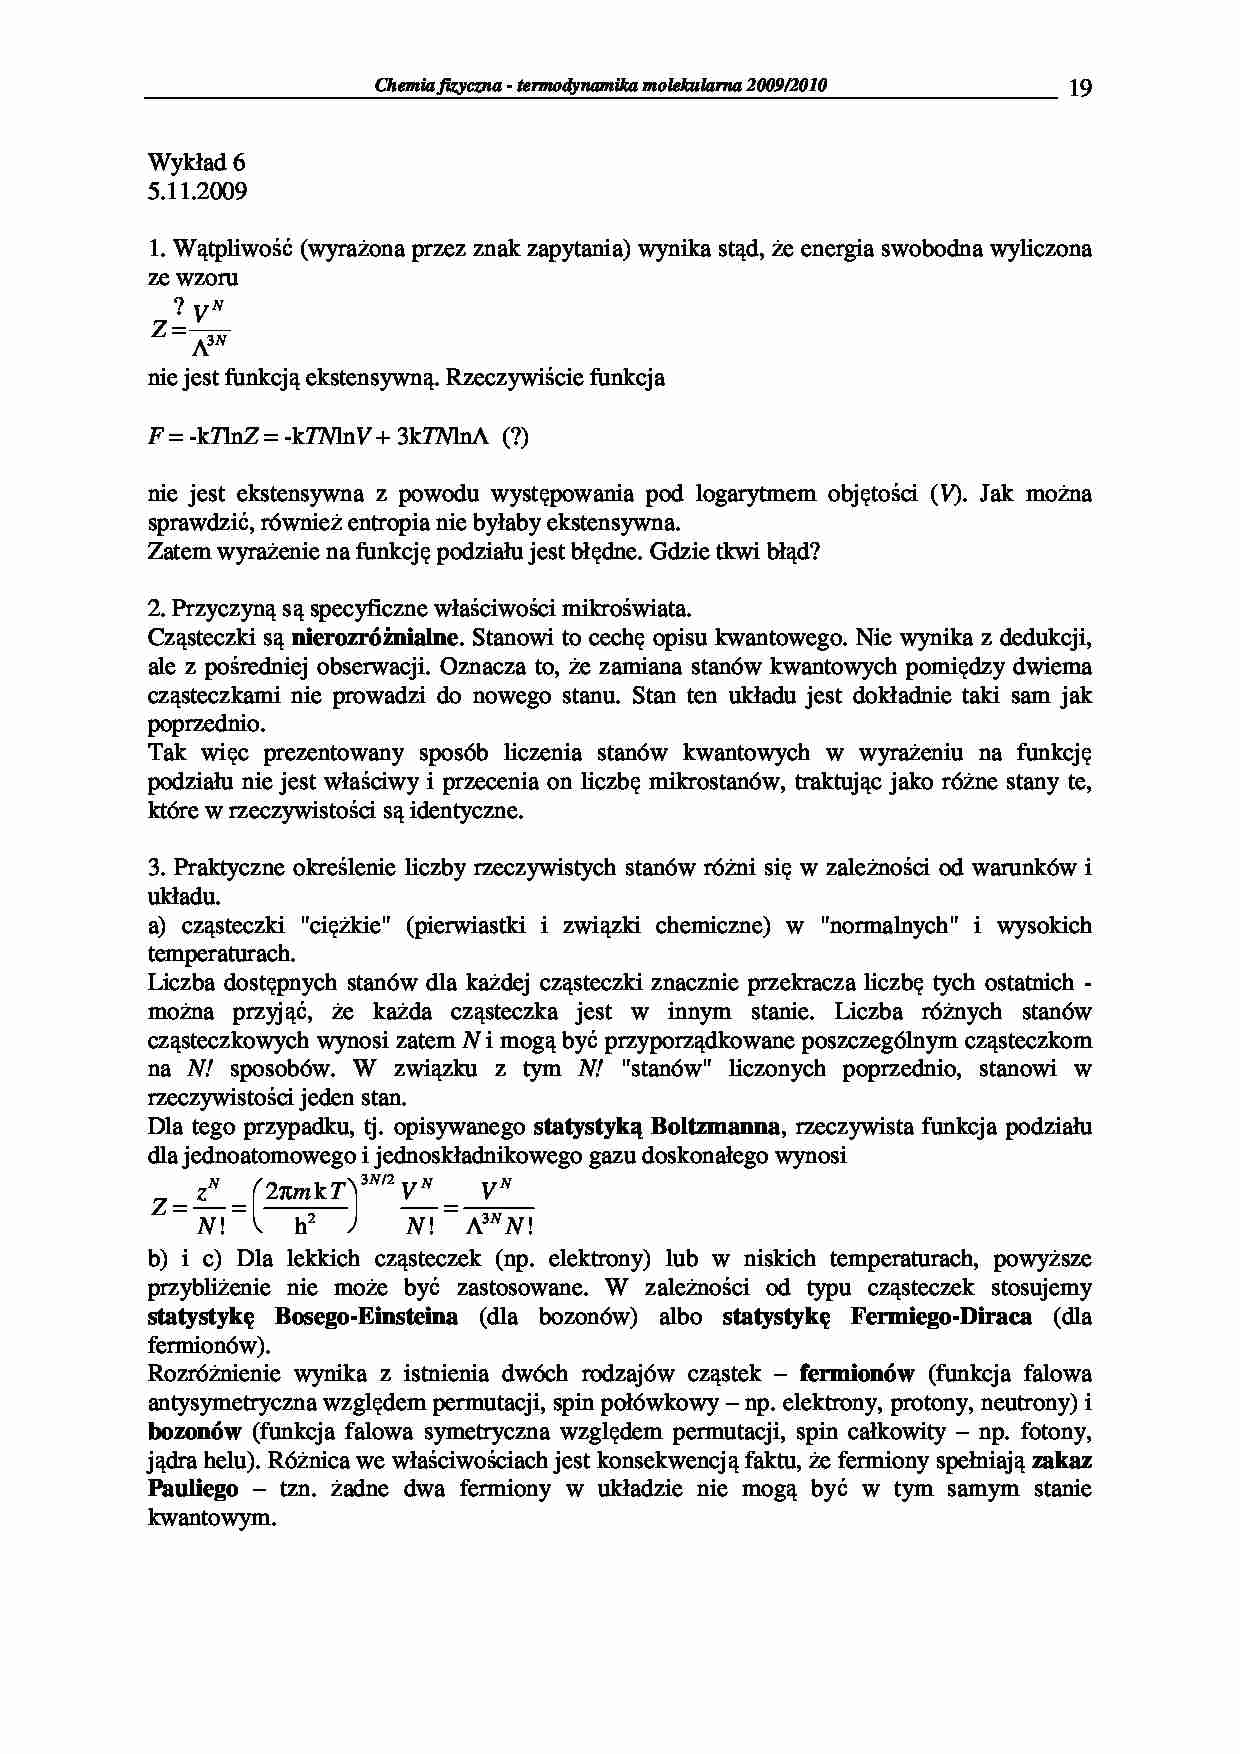 Chemia fizyczna - termodynamika molekularna 2009/2010-wykłady6 - strona 1